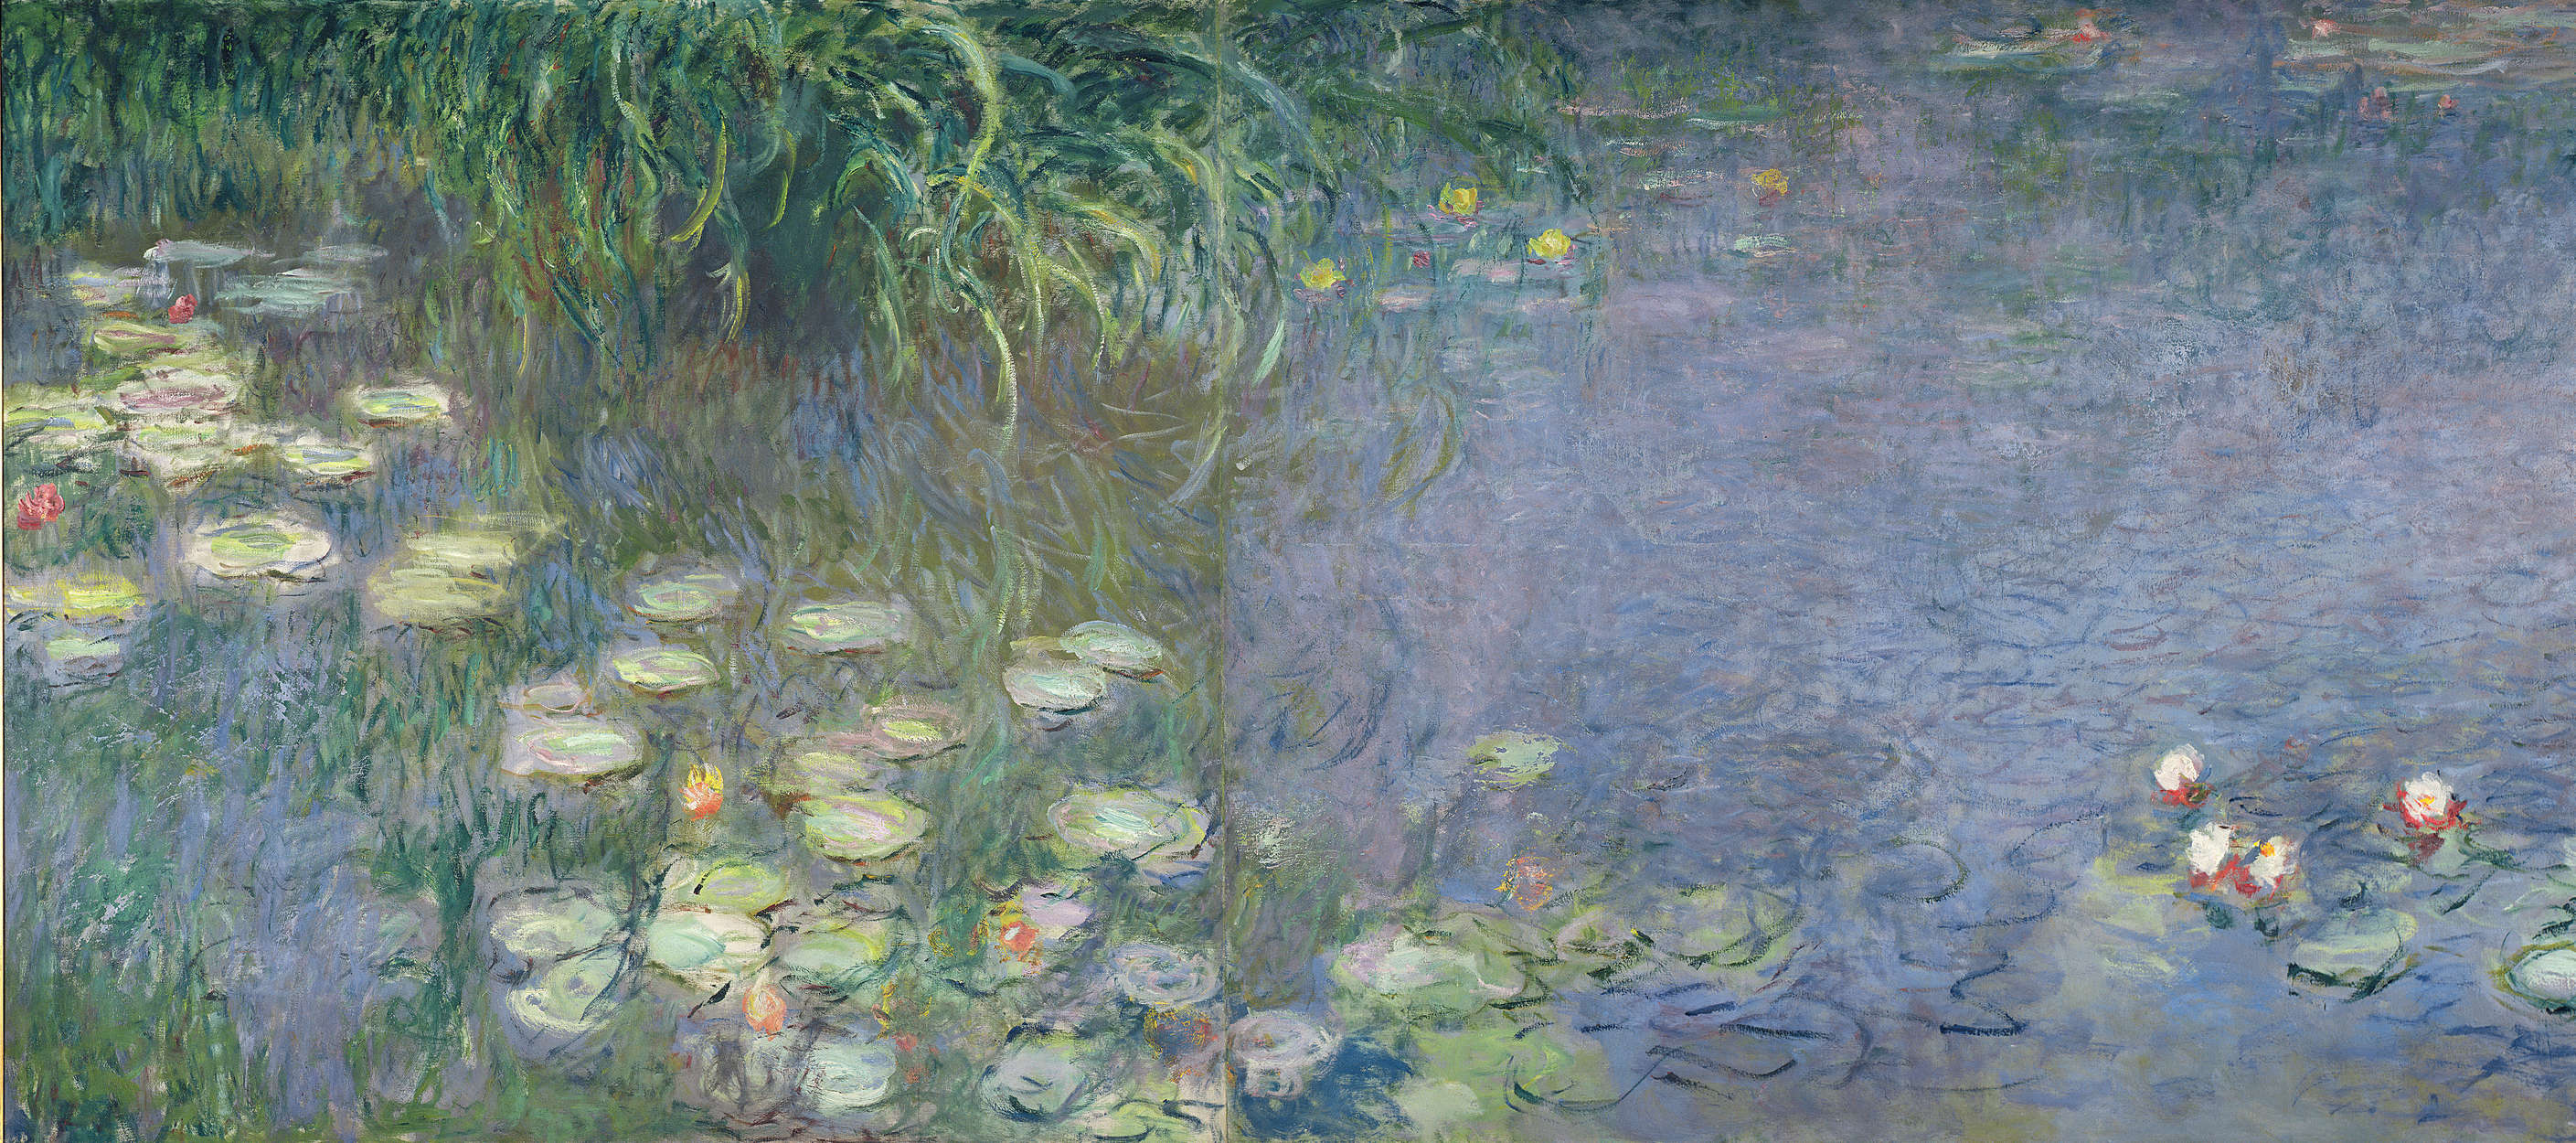             Fototapete "Seerosen: Morgen" von Claude Monet
        